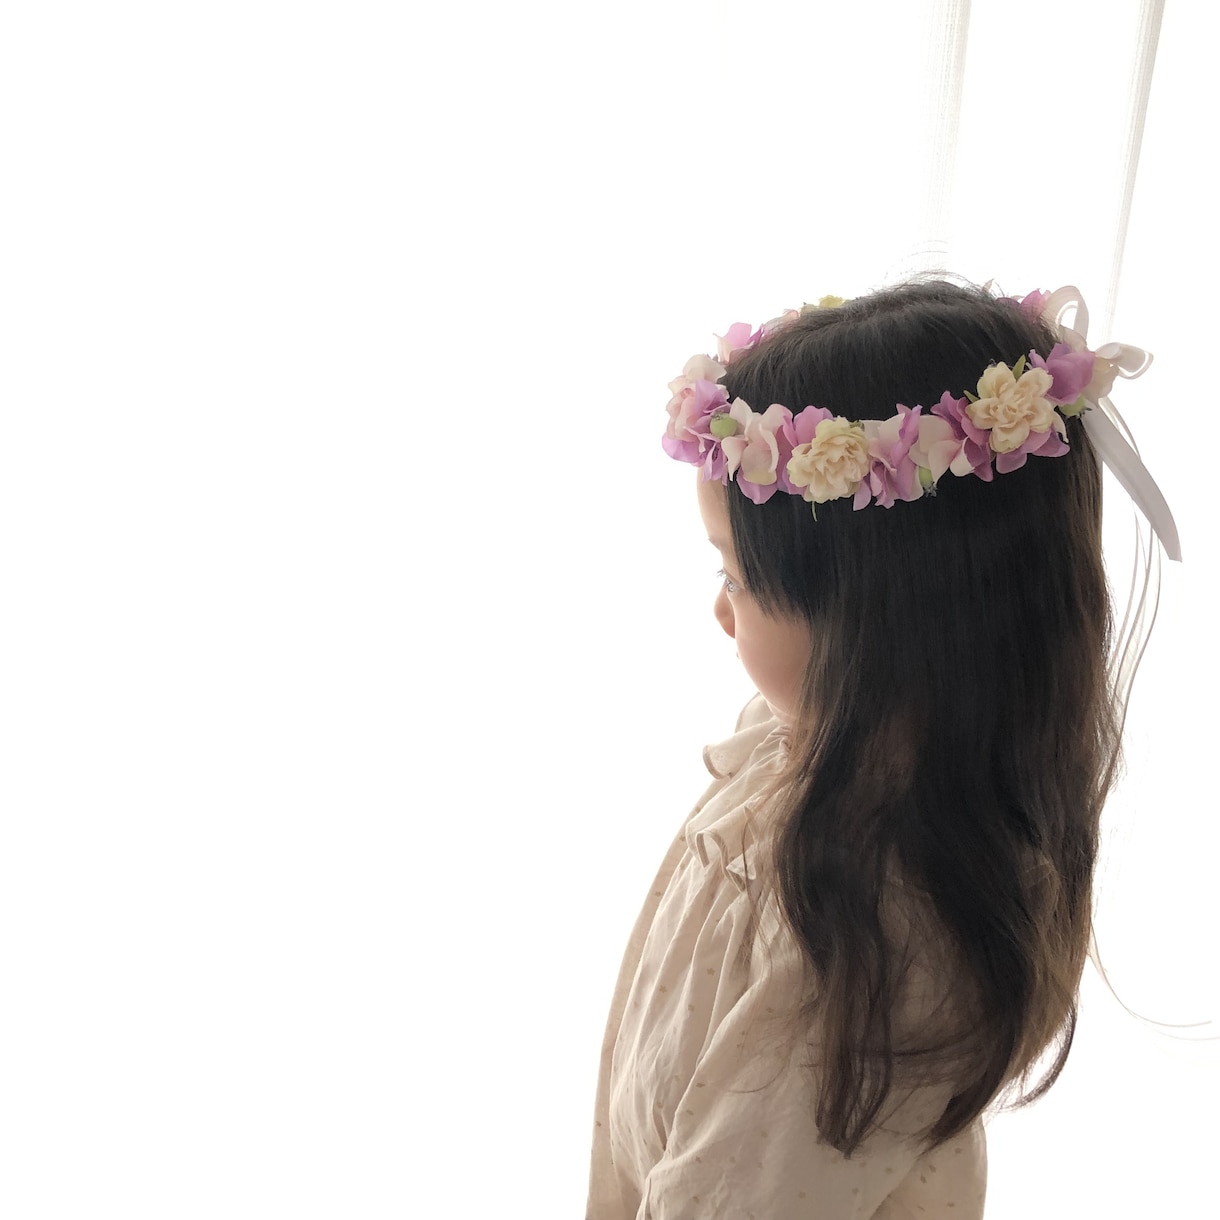 お子さま用花冠オーダー承ります 最高に可愛い1枚を撮るために♡誕生日、記念写真、リングガール イメージ1